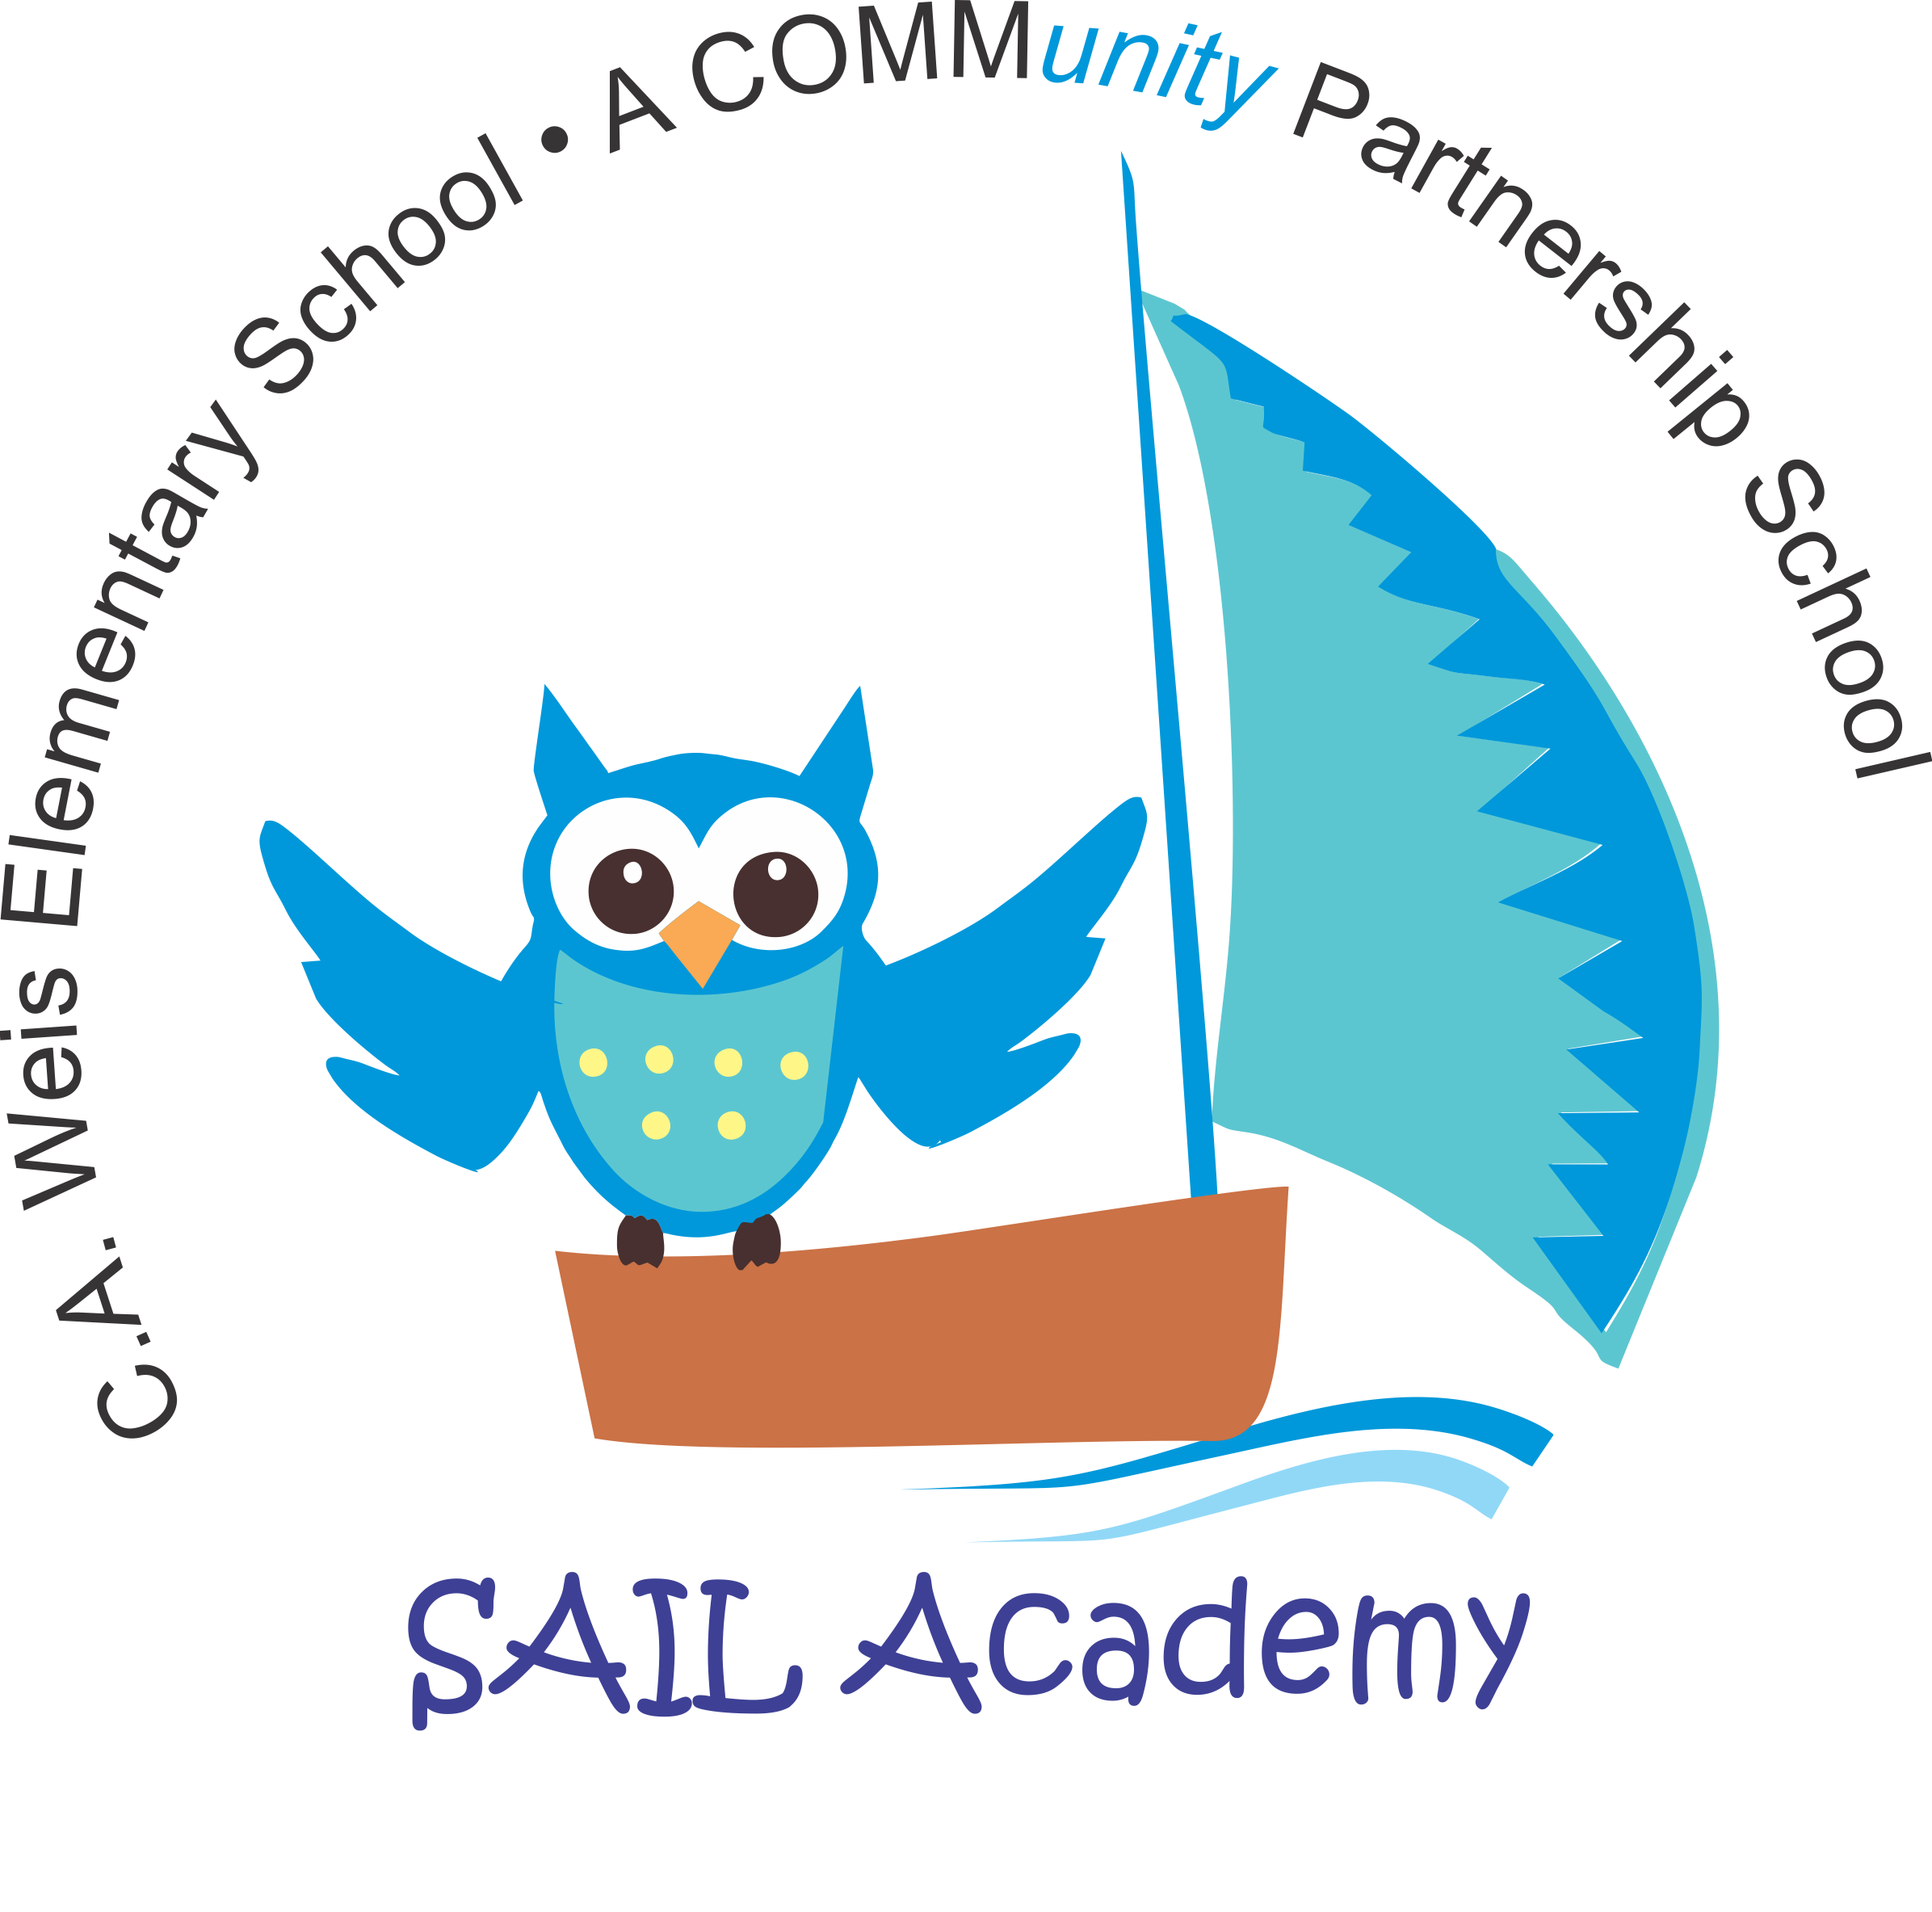 Sail academy children s. Teen clipart advisory class